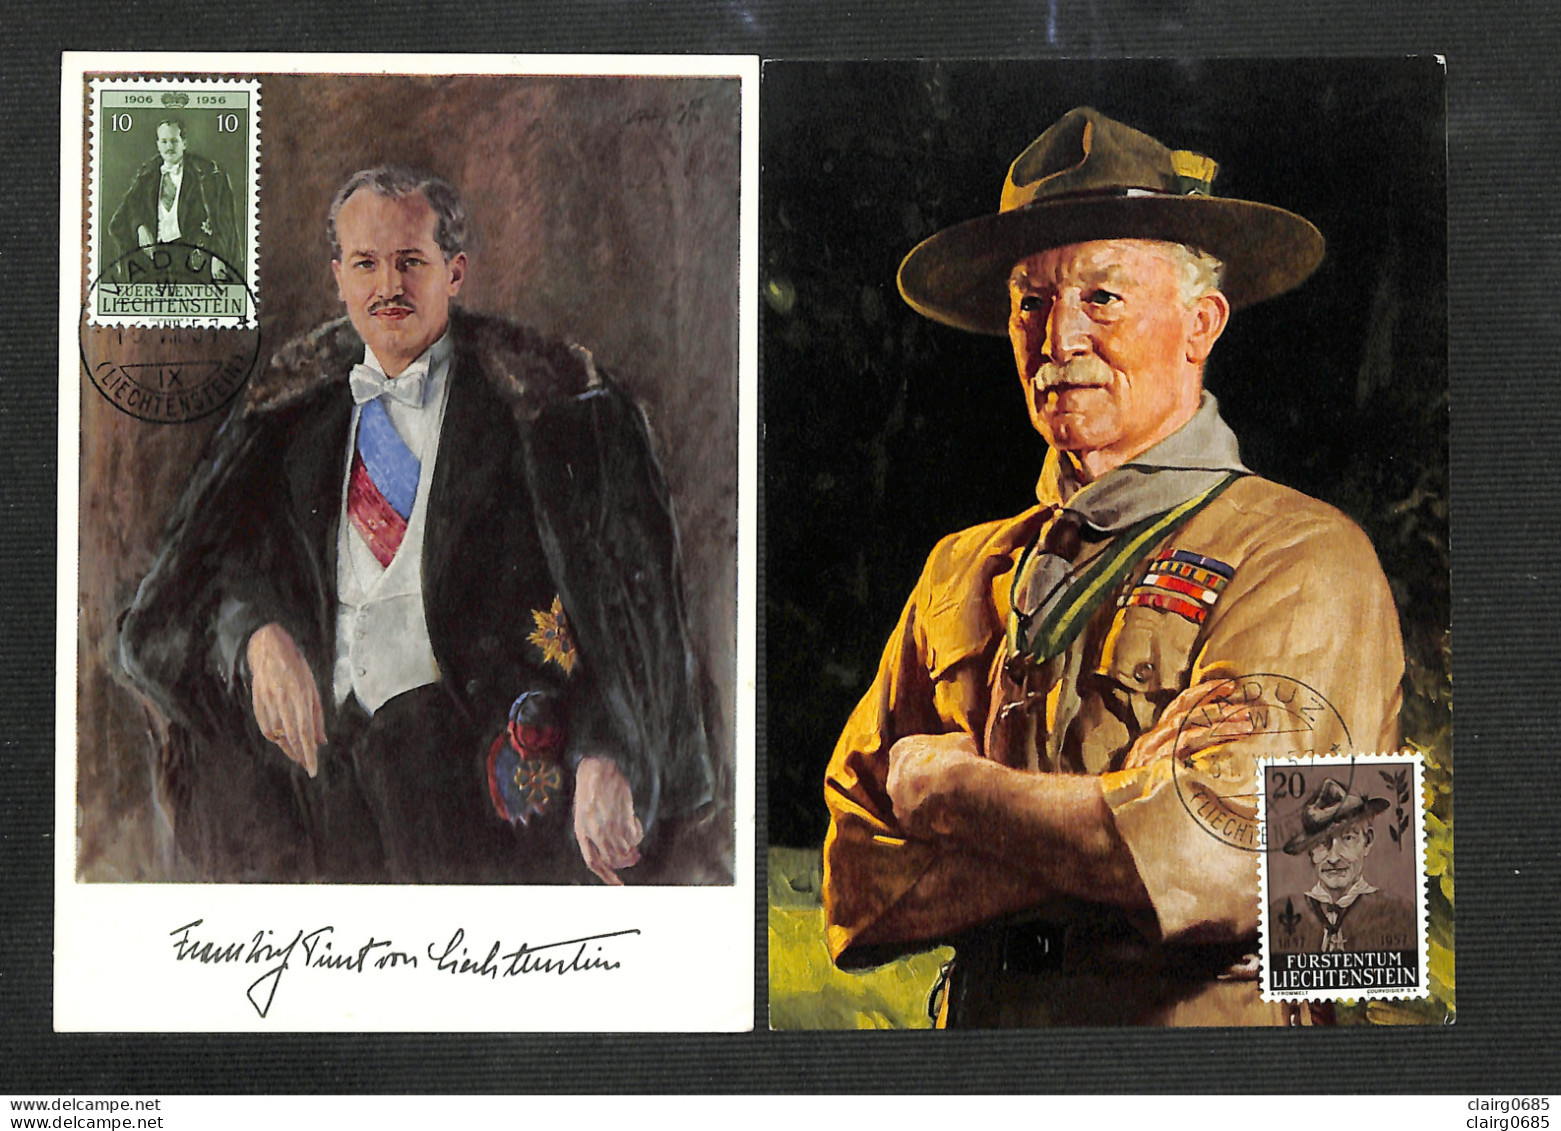 LIECHTENSTEIN - 2 Cartes MAXIMUM 1957 - Franz Josef II - Lord Robert Baden-Powell Of Gilwell - Cartes-Maximum (CM)